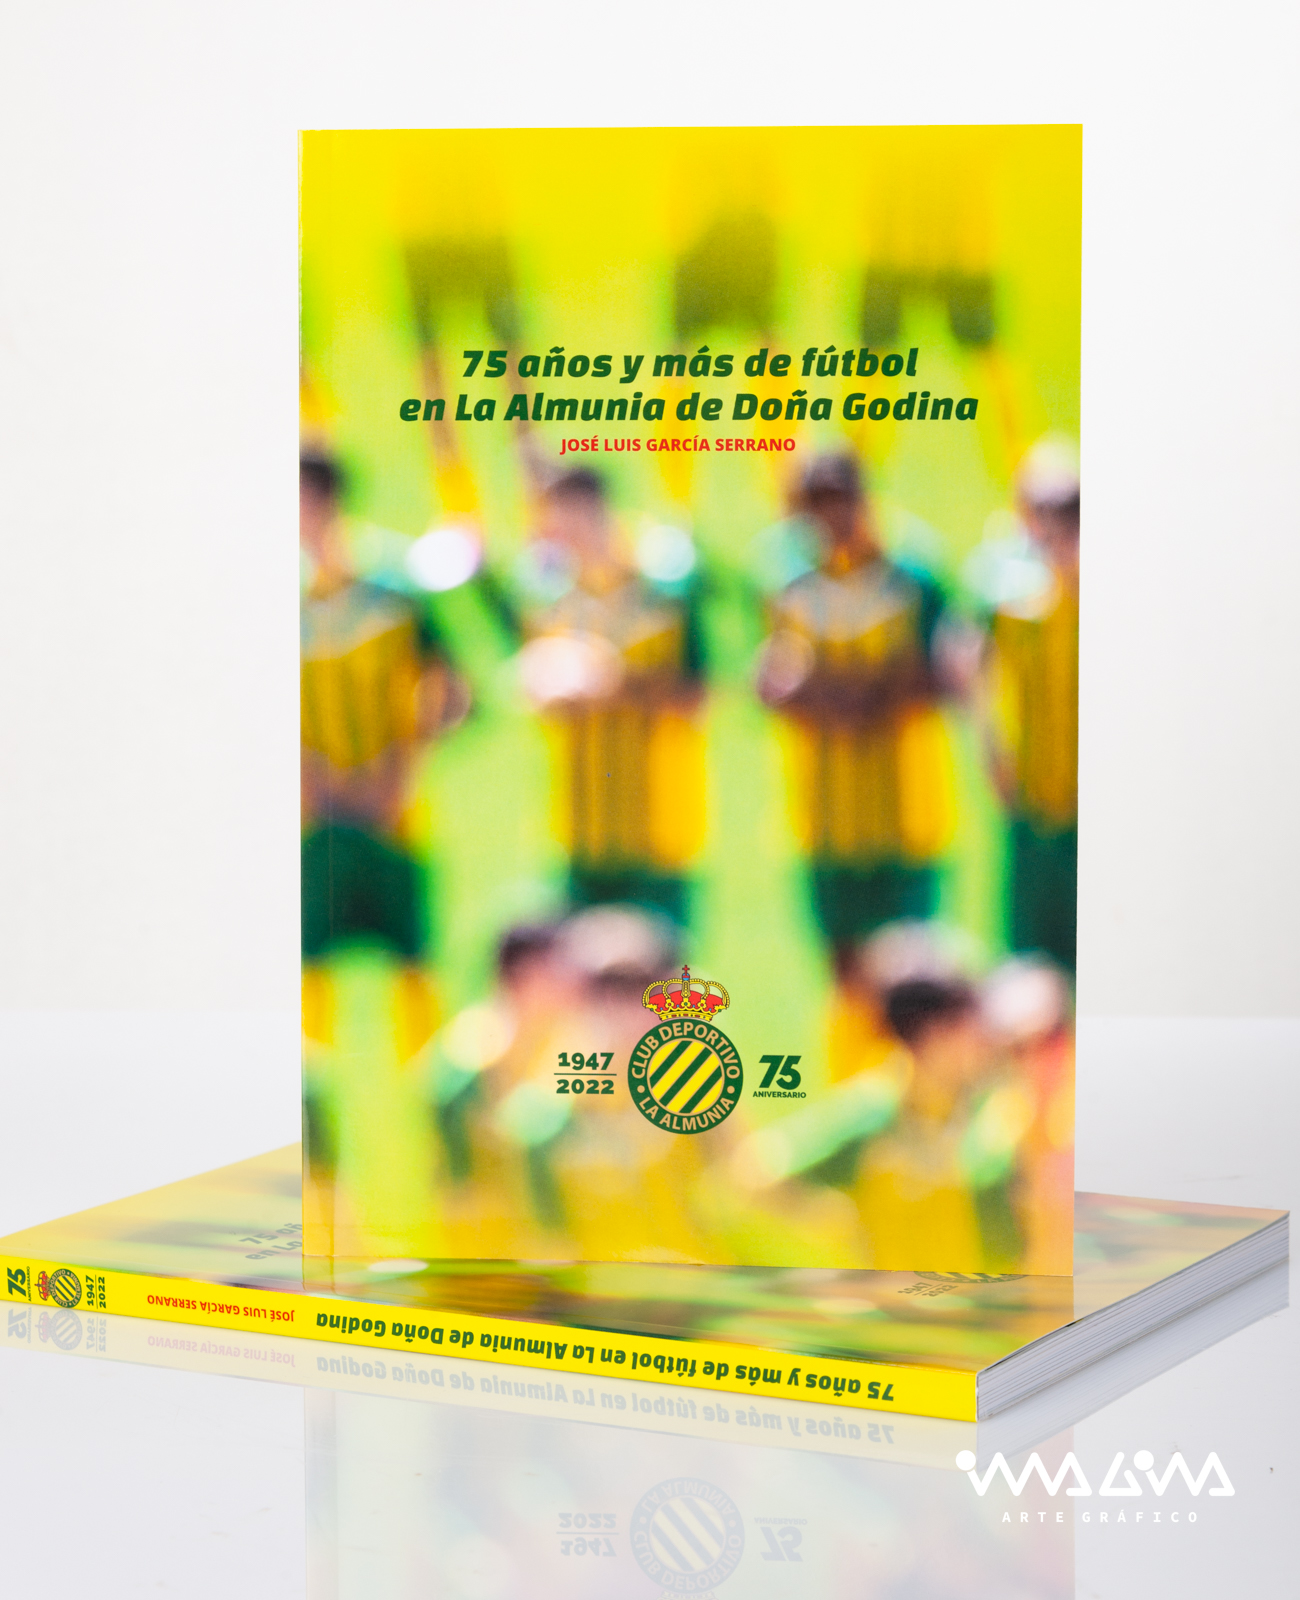 Libro 75 años y más de fútbol en La Almunia de Doña Godina - José Luis García Serrano - Imagina Arte Gráfico